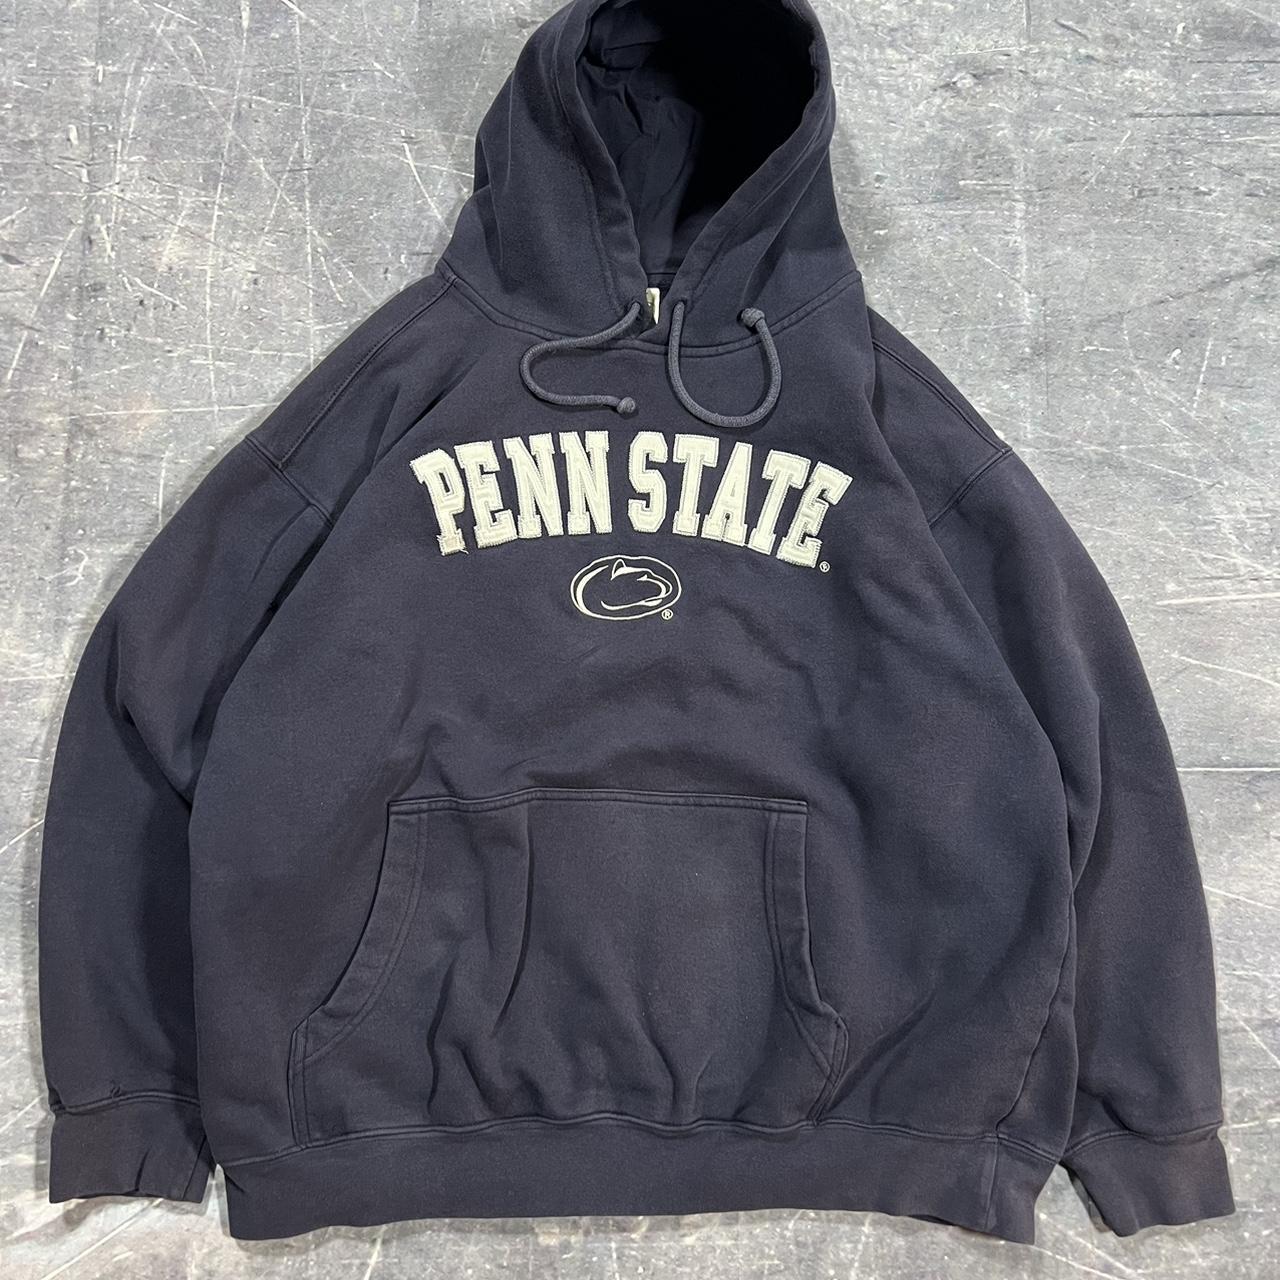 Vintage early 2000s Penn state hoodie Size:... - Depop